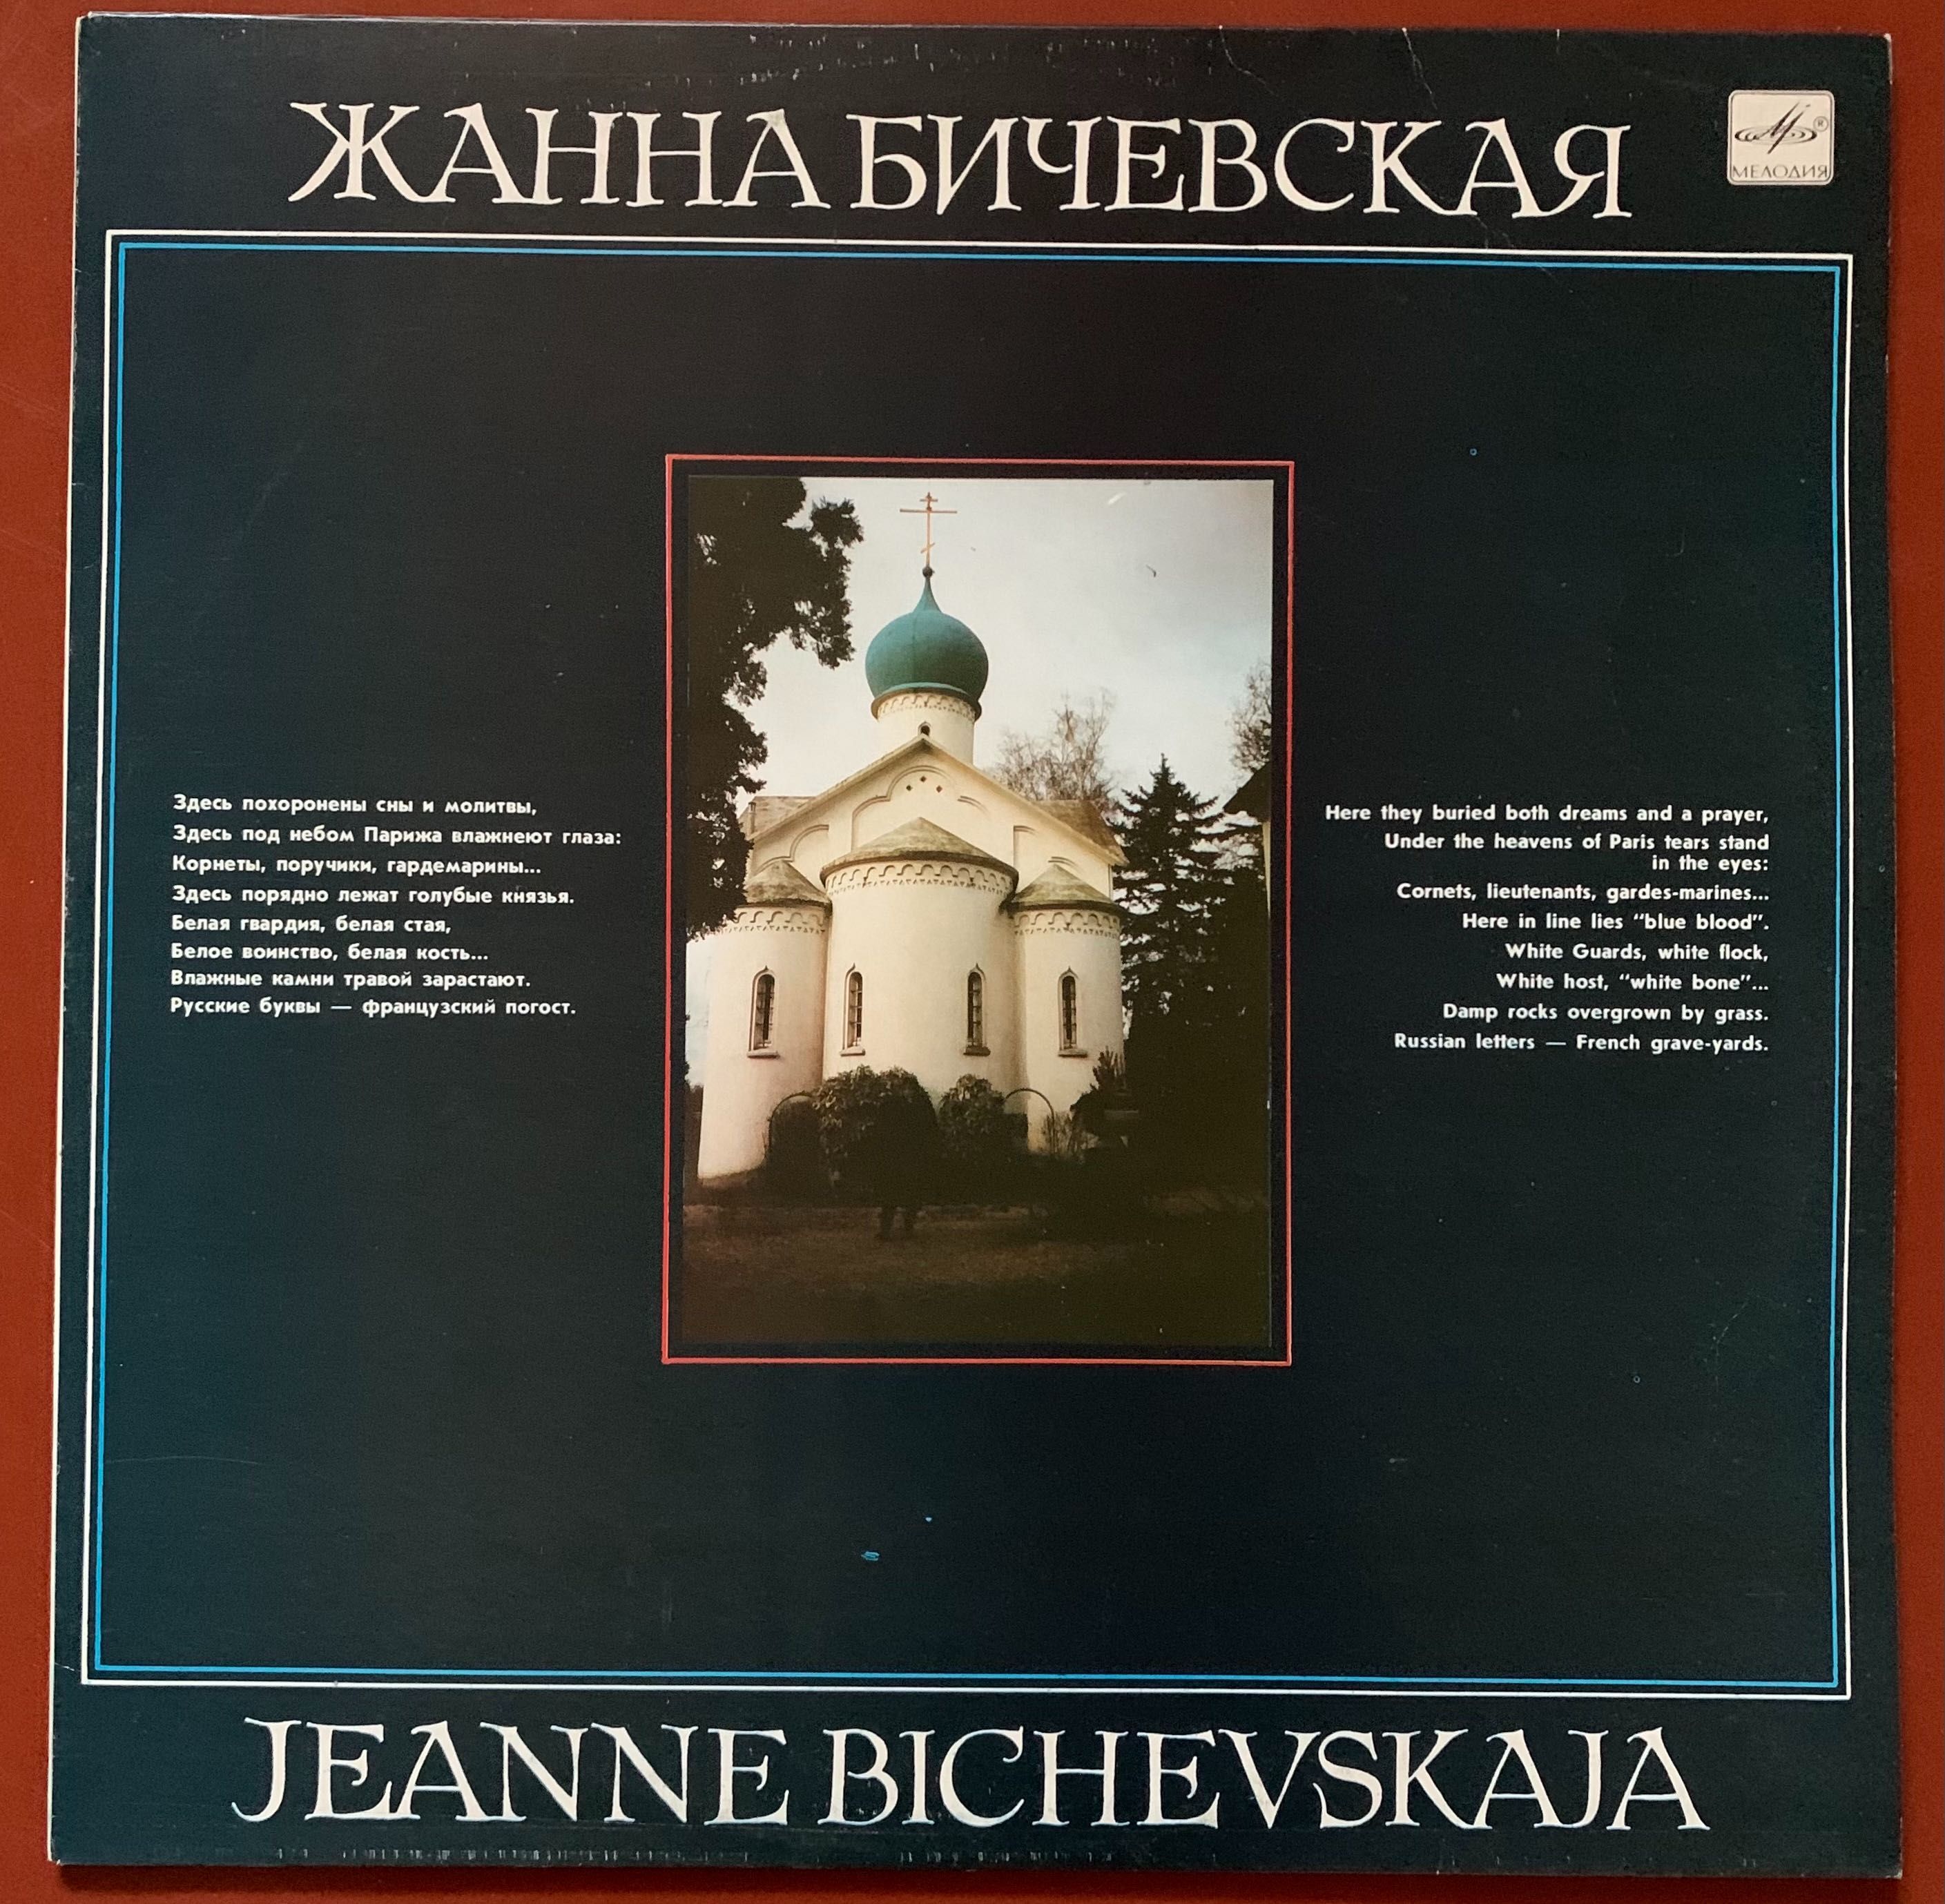 Платівка. Жанна Бичевская. Мелодія. Запис 1989